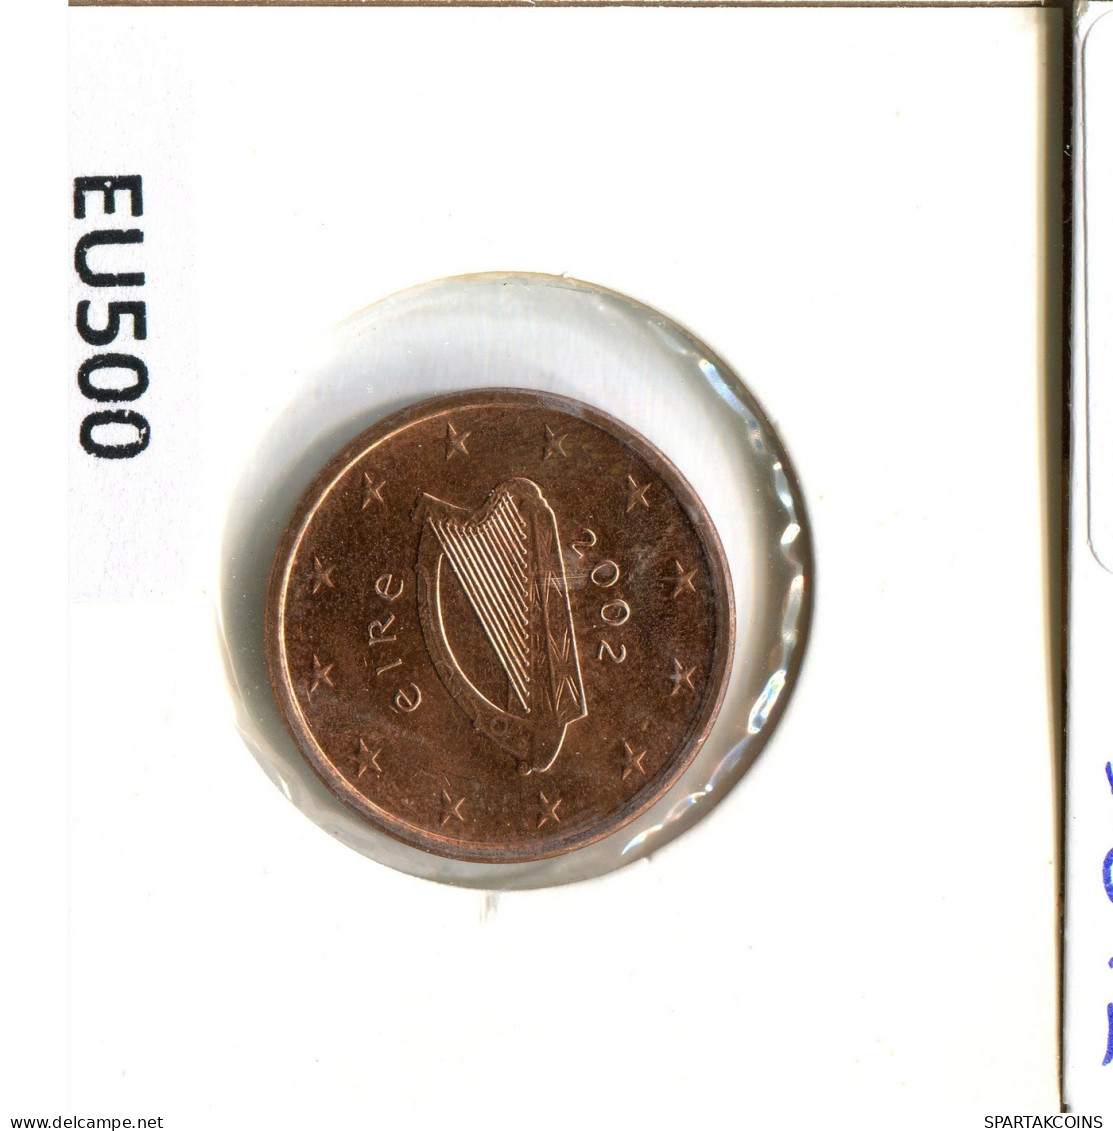 5 EURO CENTS 2002 IRELAND Coin #EU500.U.A - Ireland